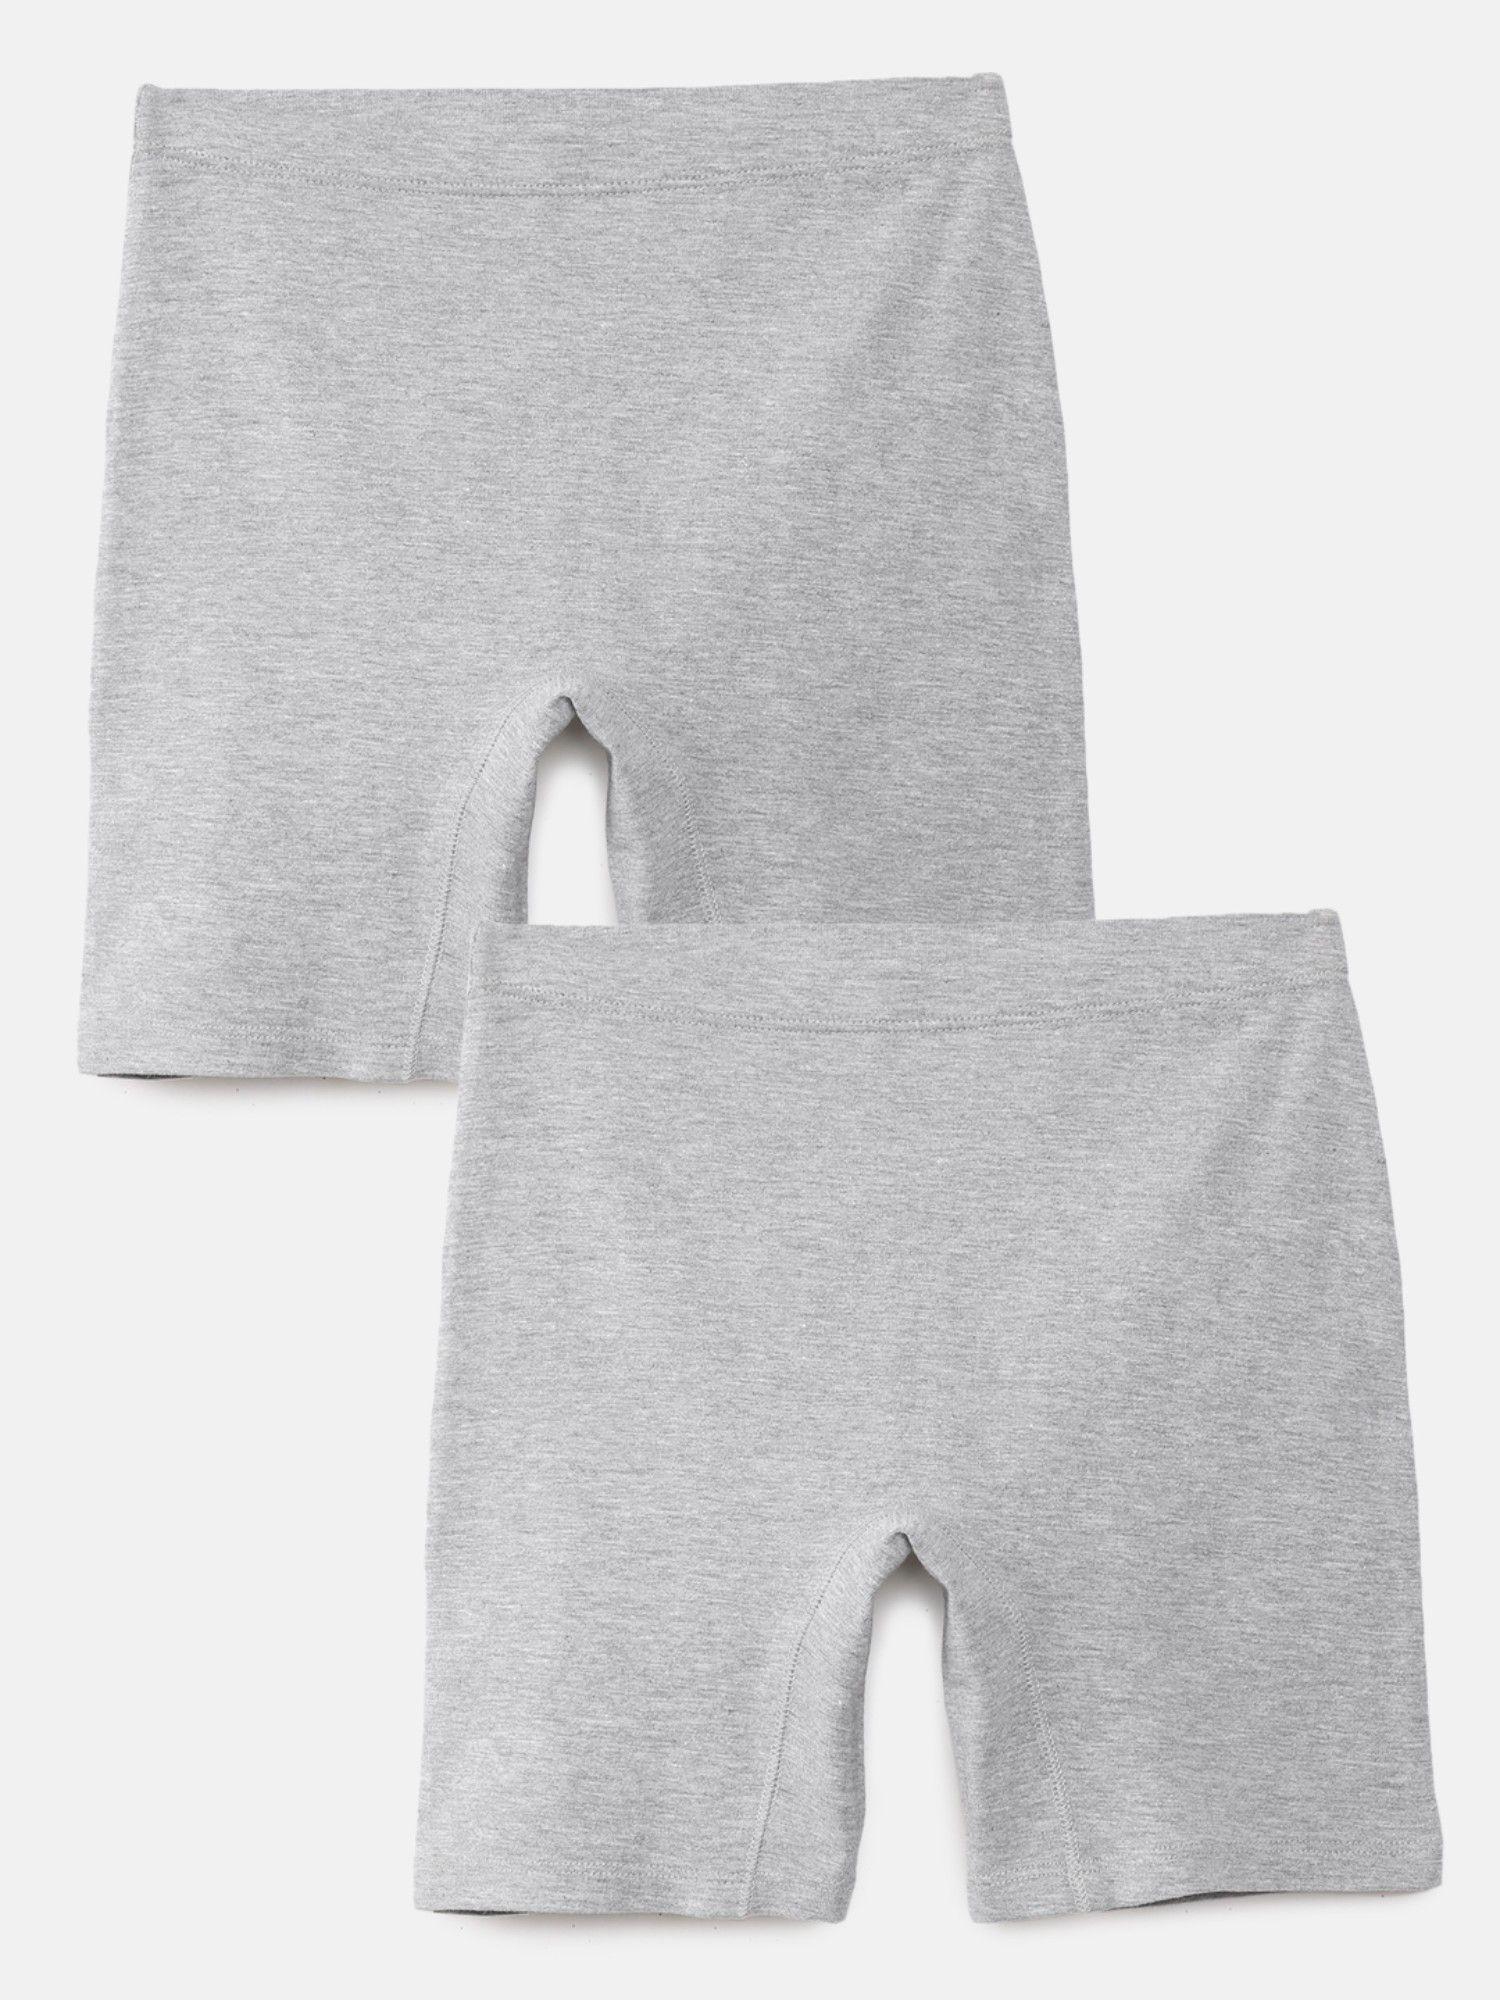 Girls Inner Shorts Grey (Pack of 2)